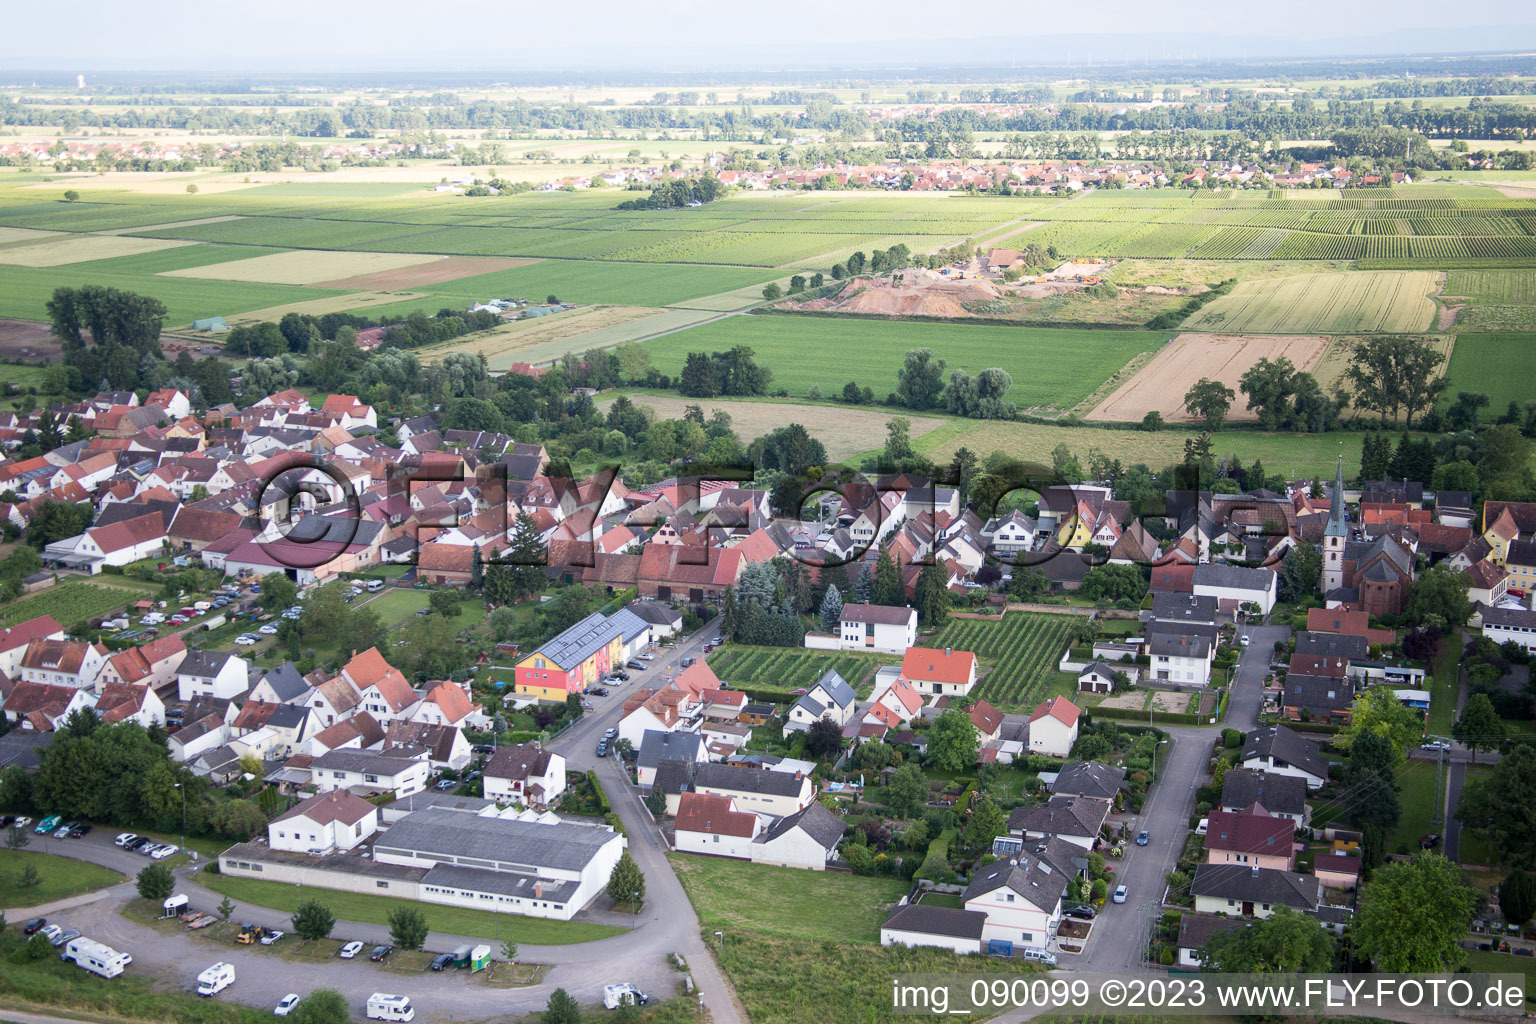 Drone image of District Duttweiler in Neustadt an der Weinstraße in the state Rhineland-Palatinate, Germany